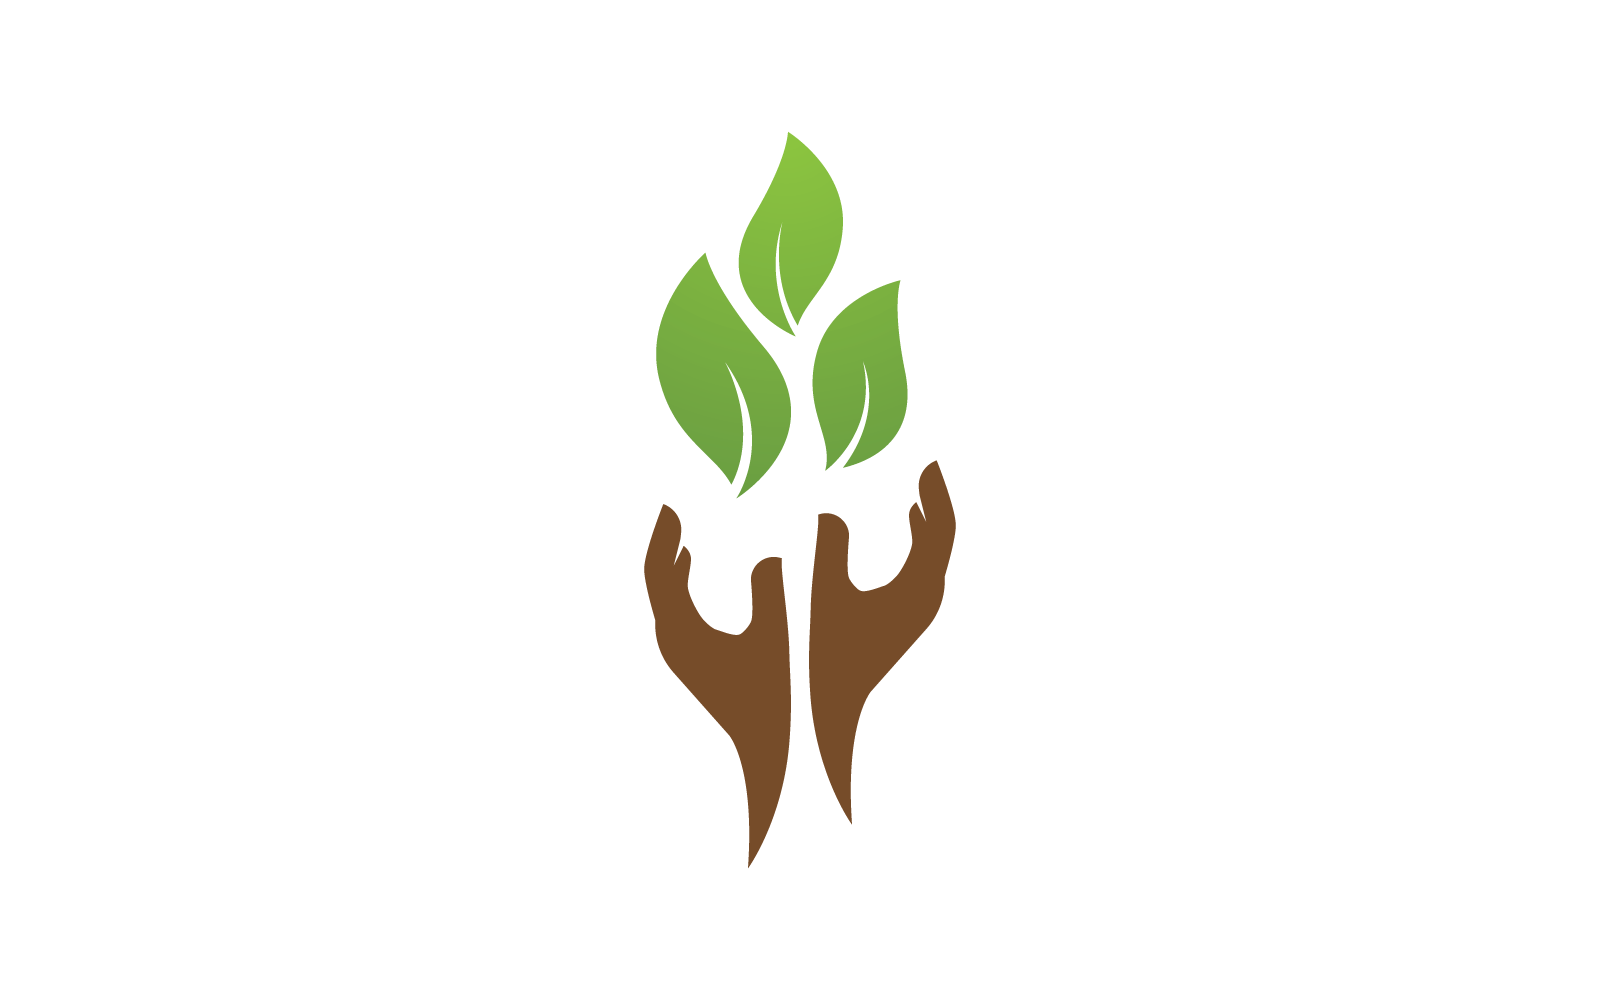 Save nature ecology logo hand and leaf design illustration